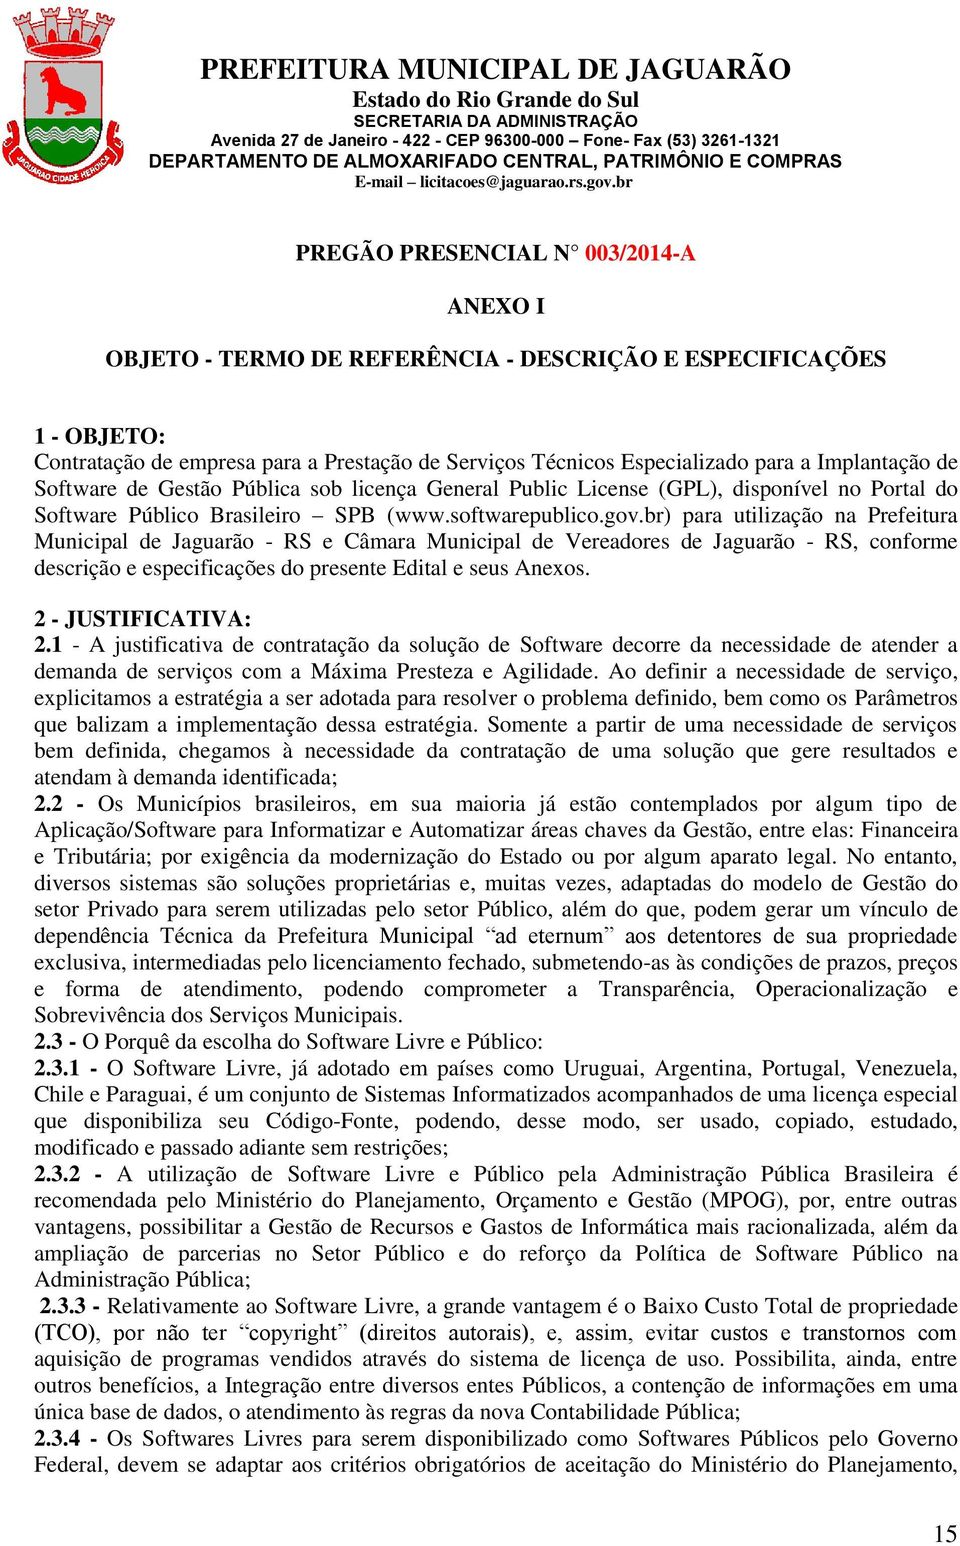 br) para utilização na Prefeitura Municipal de Jaguarão - RS e Câmara Municipal de Vereadores de Jaguarão - RS, conforme descrição e especificações do presente Edital e seus Anexos.